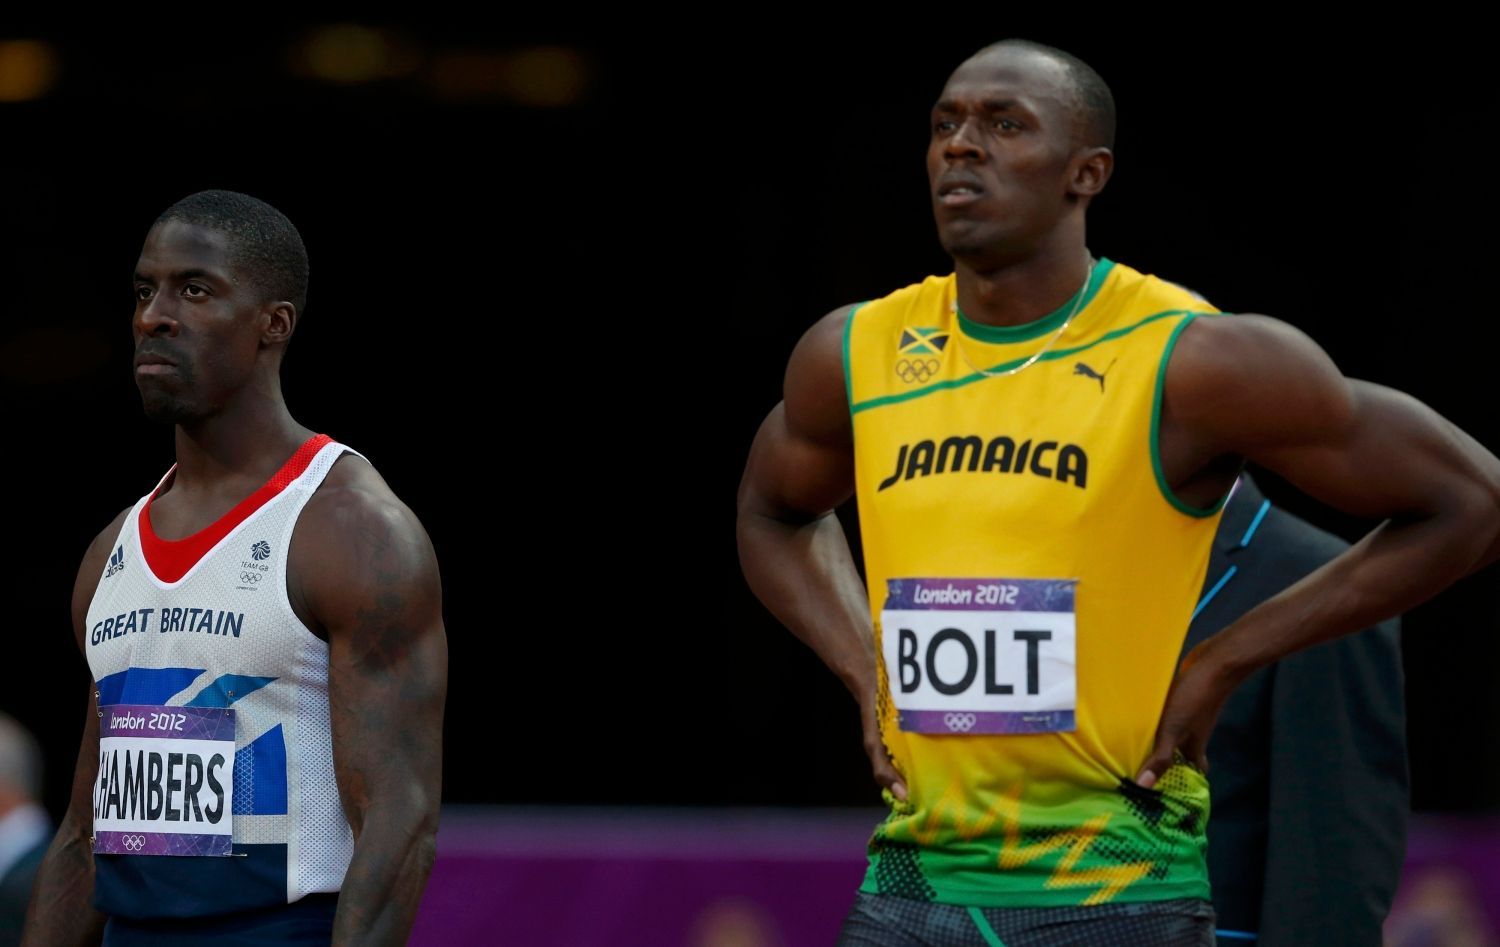 Jamajský sprinter Usain Bolt se koncentruje před semifinále na 100 metrů během OH 2012 v Londýně.